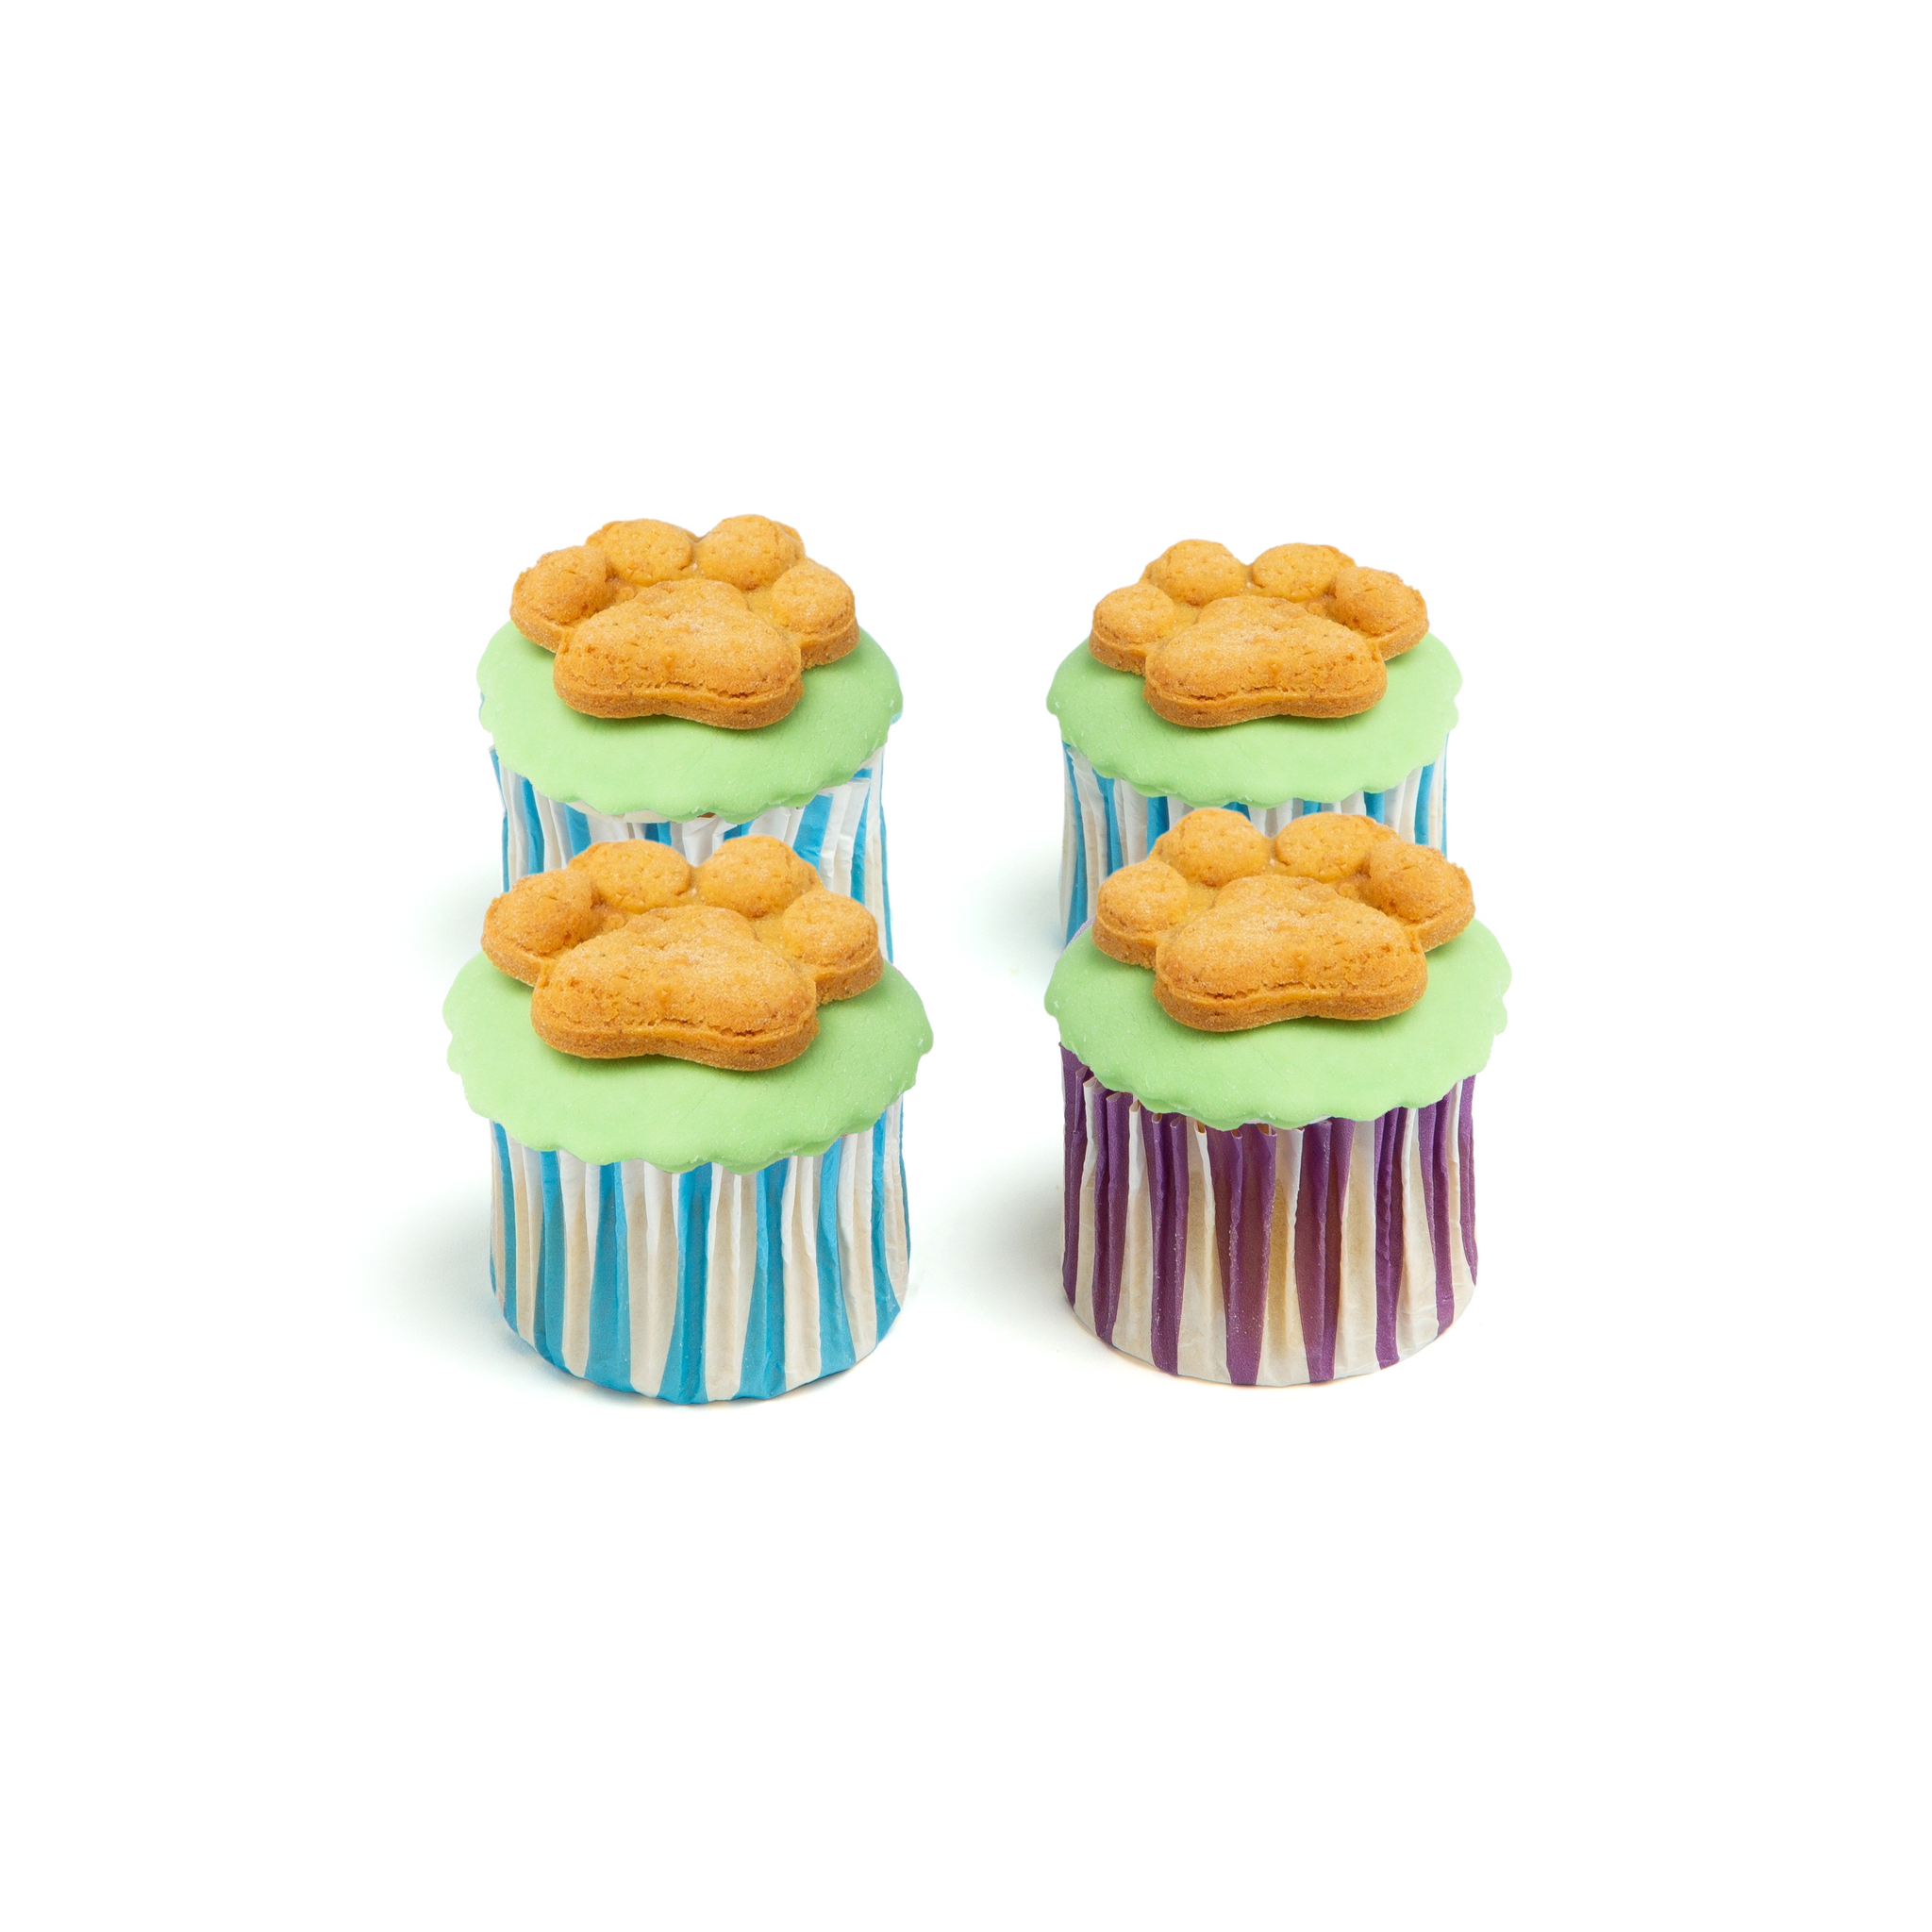 Pupcakes (4 PCS) - Single Color